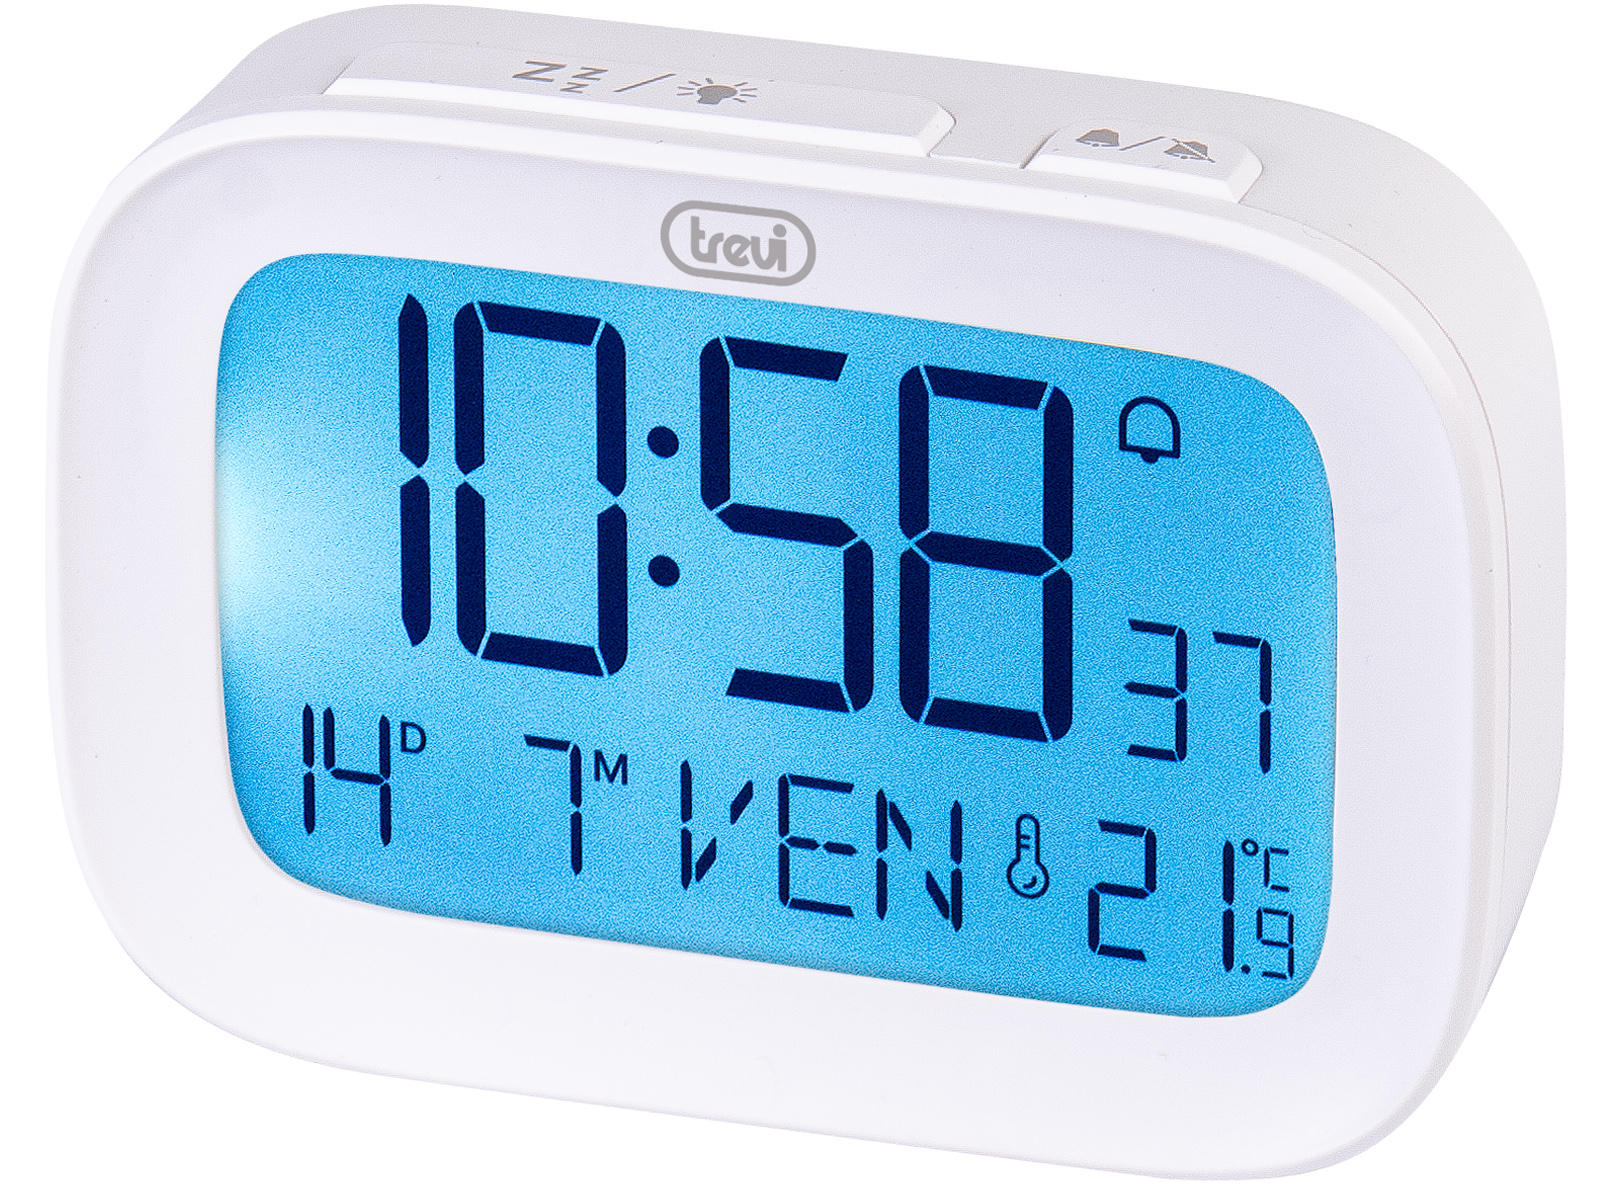 Orologio Sveglia Digitale con Termometro Integrato Trevi SLD 3850 Bianco